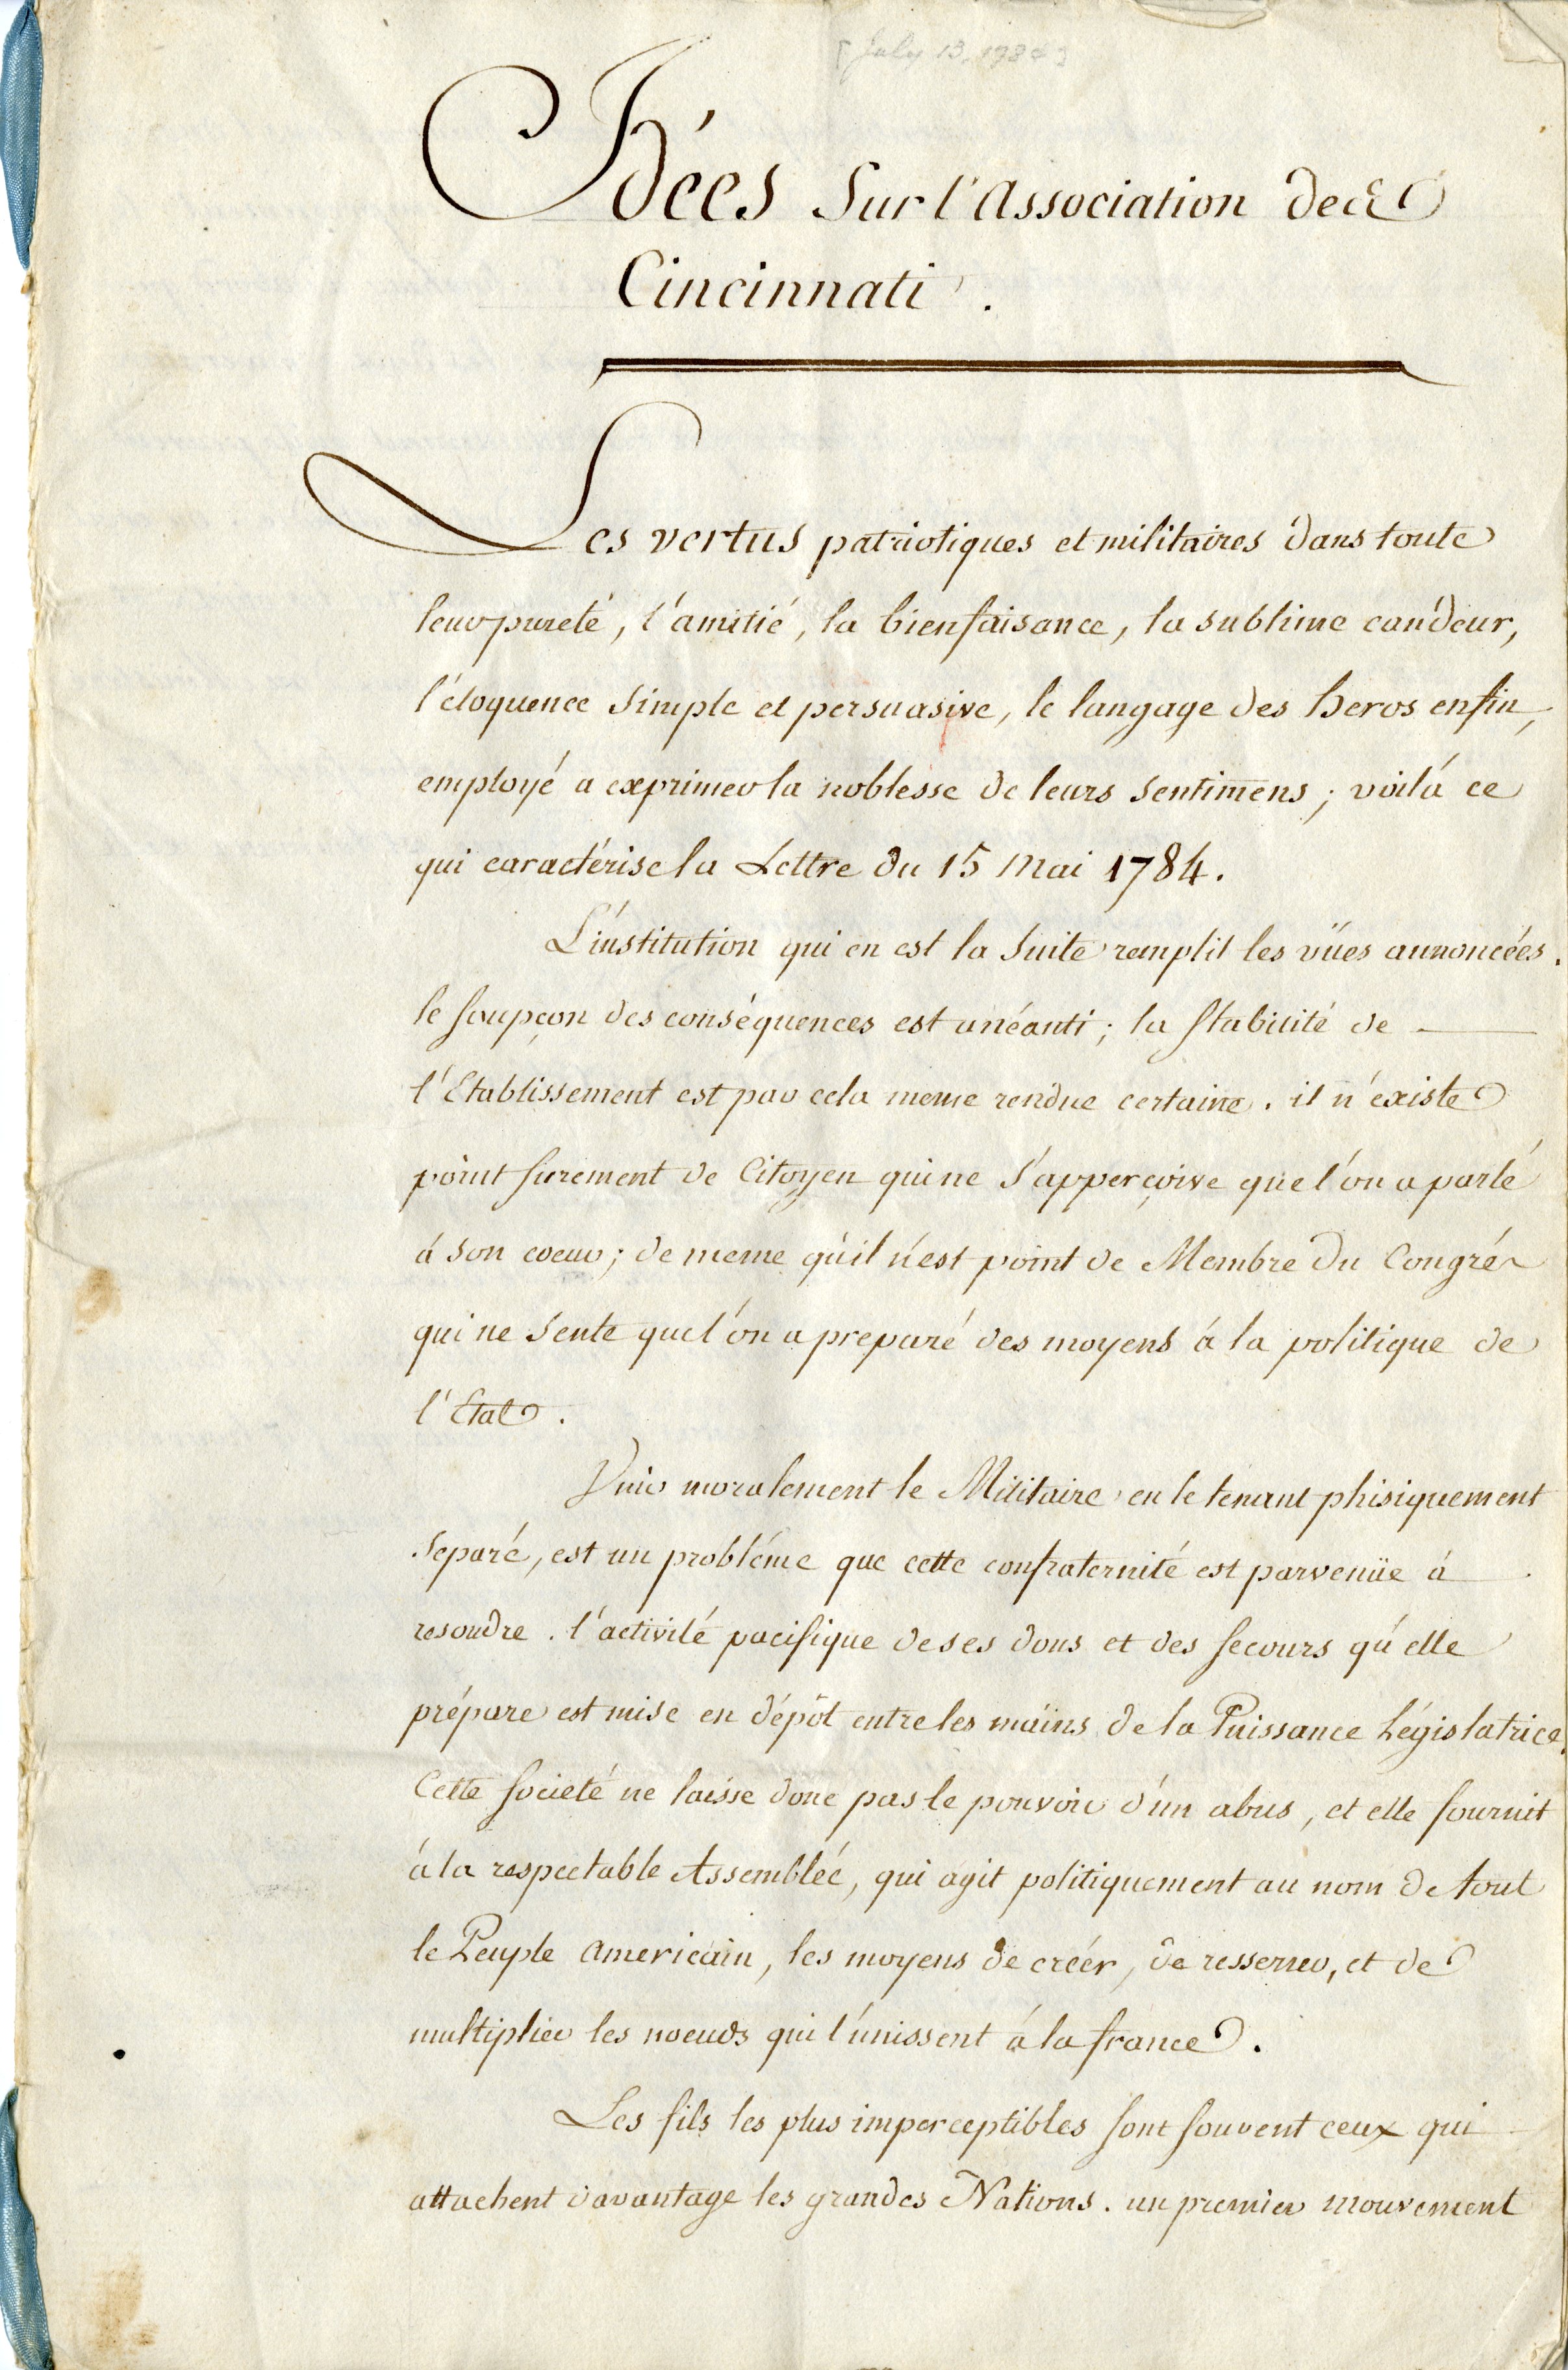 “Idees sur l’Associaton des Cincinnati,” Charles Henri, comte d’Estaing, July 13, 1784